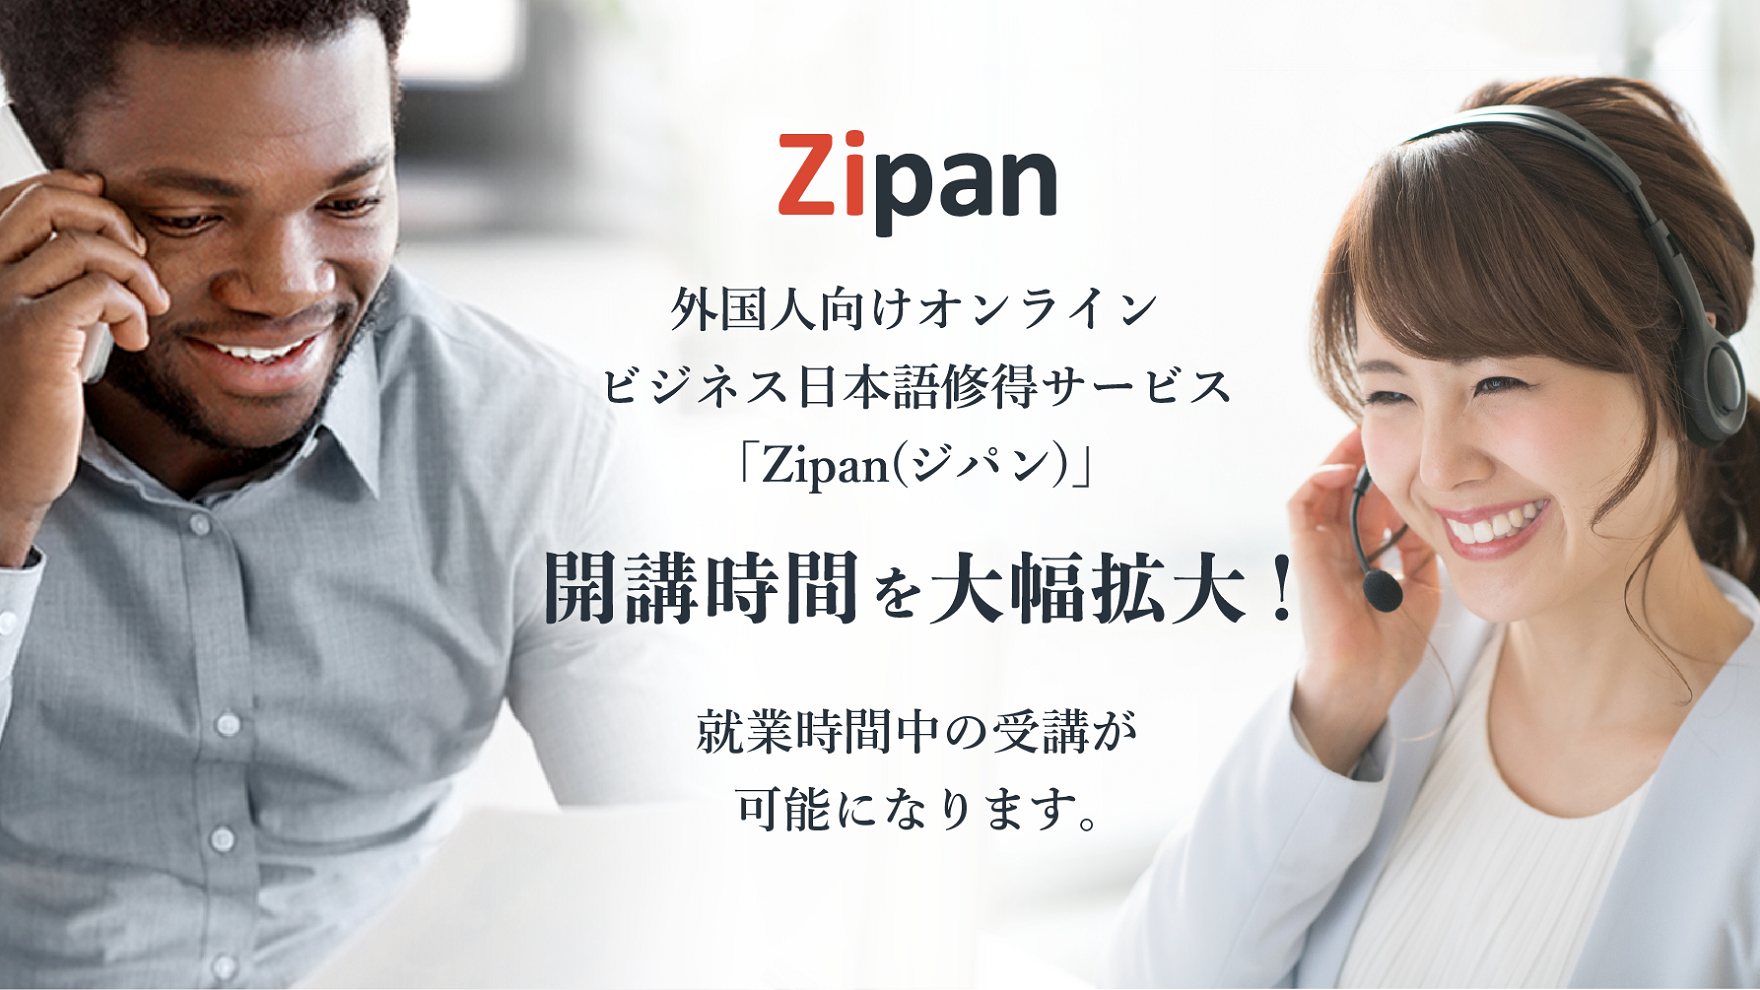 「Zipan(ジパン)」、開講時間を大幅拡大